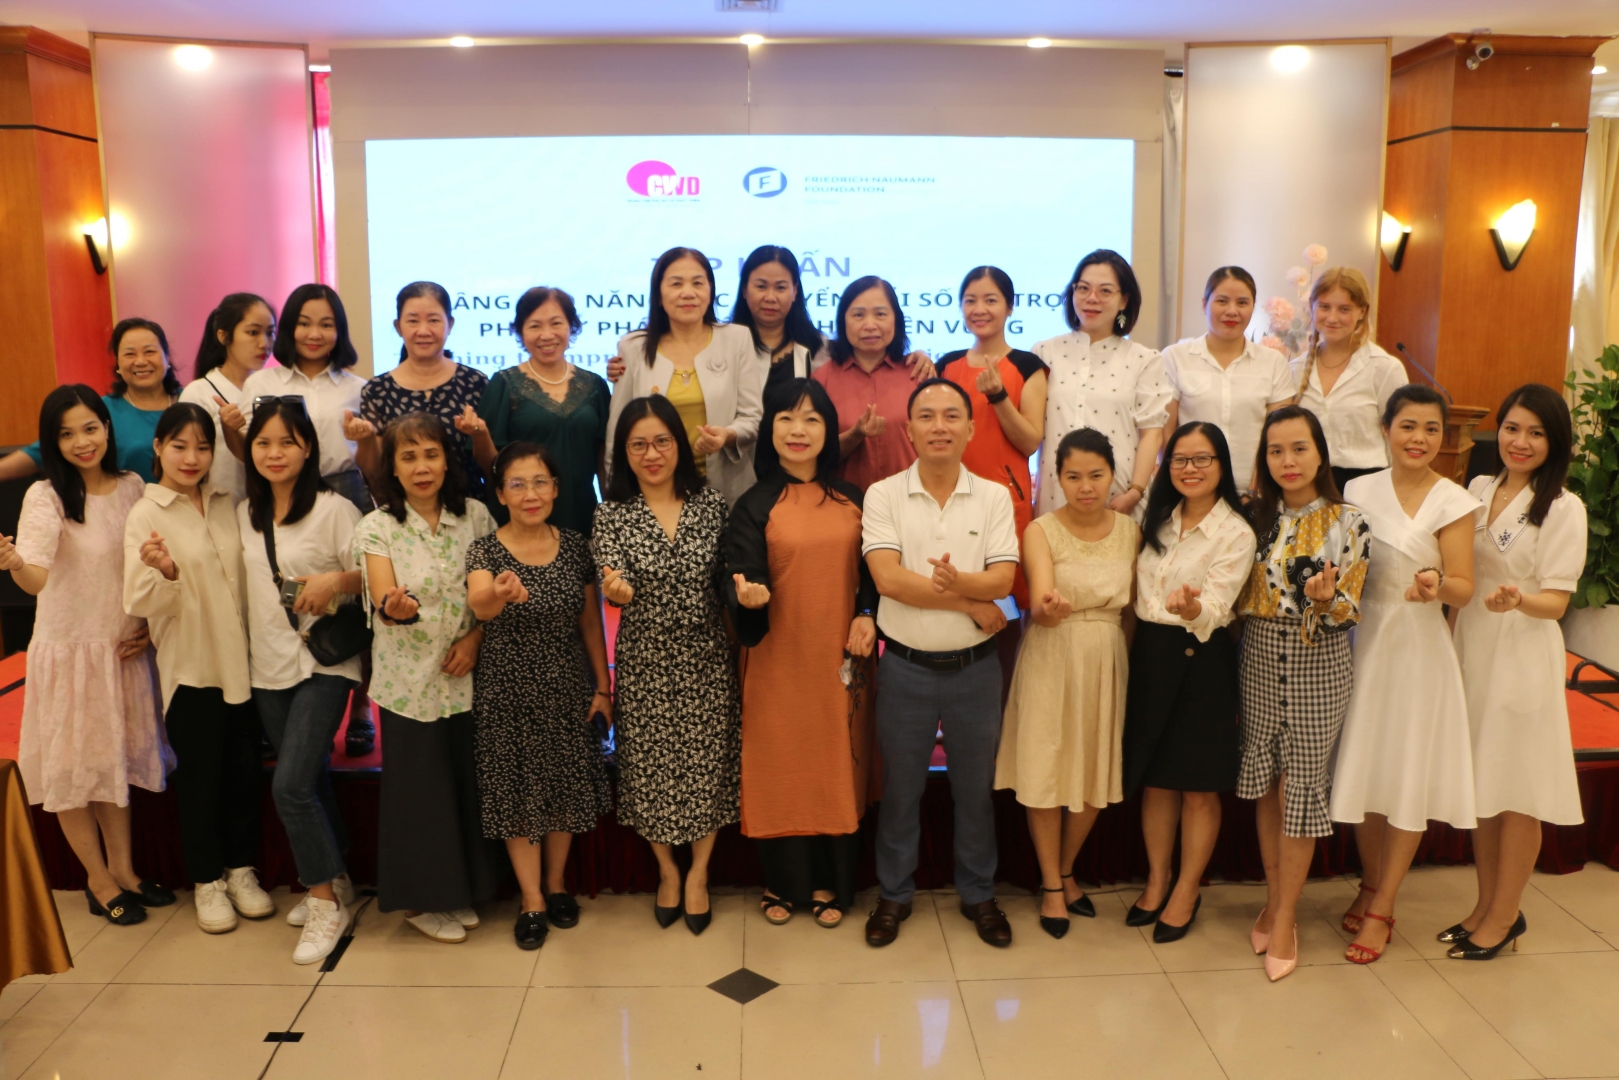 CWD Digital Transformation Training Workshop for Women